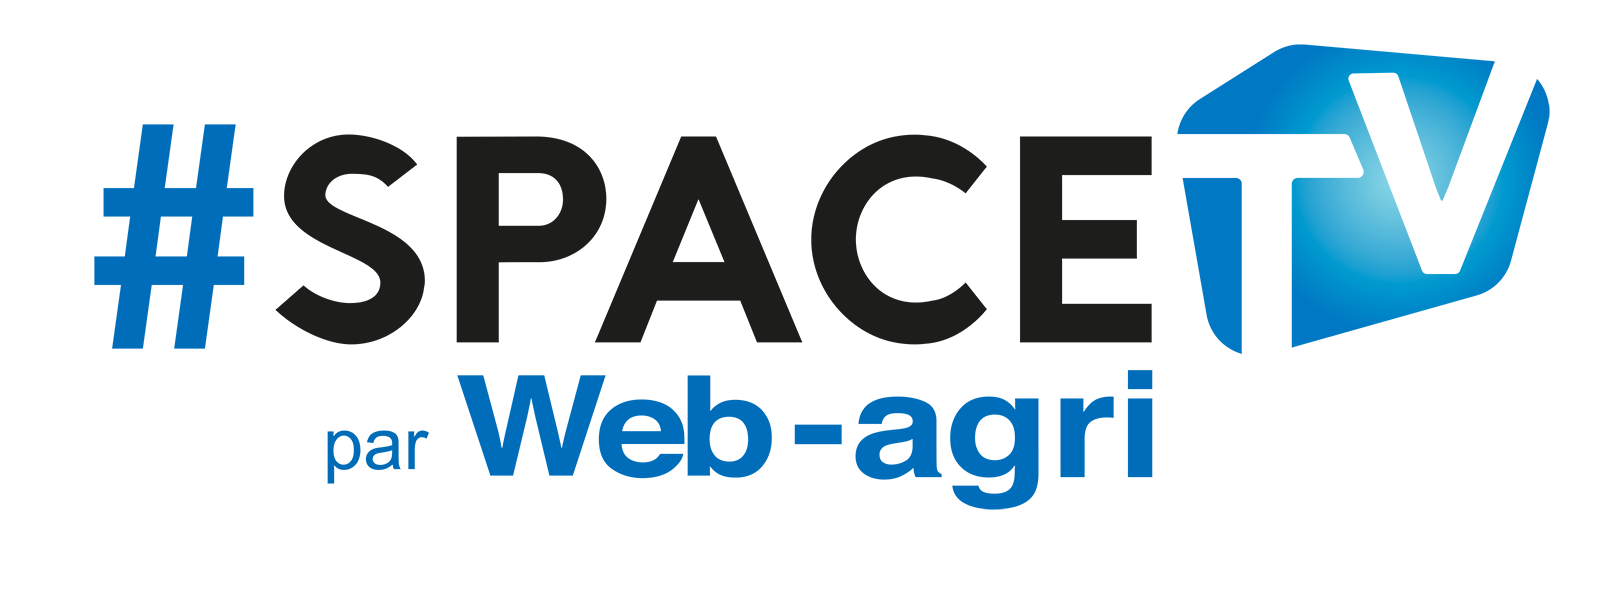 SPACE TV par Web-Agri